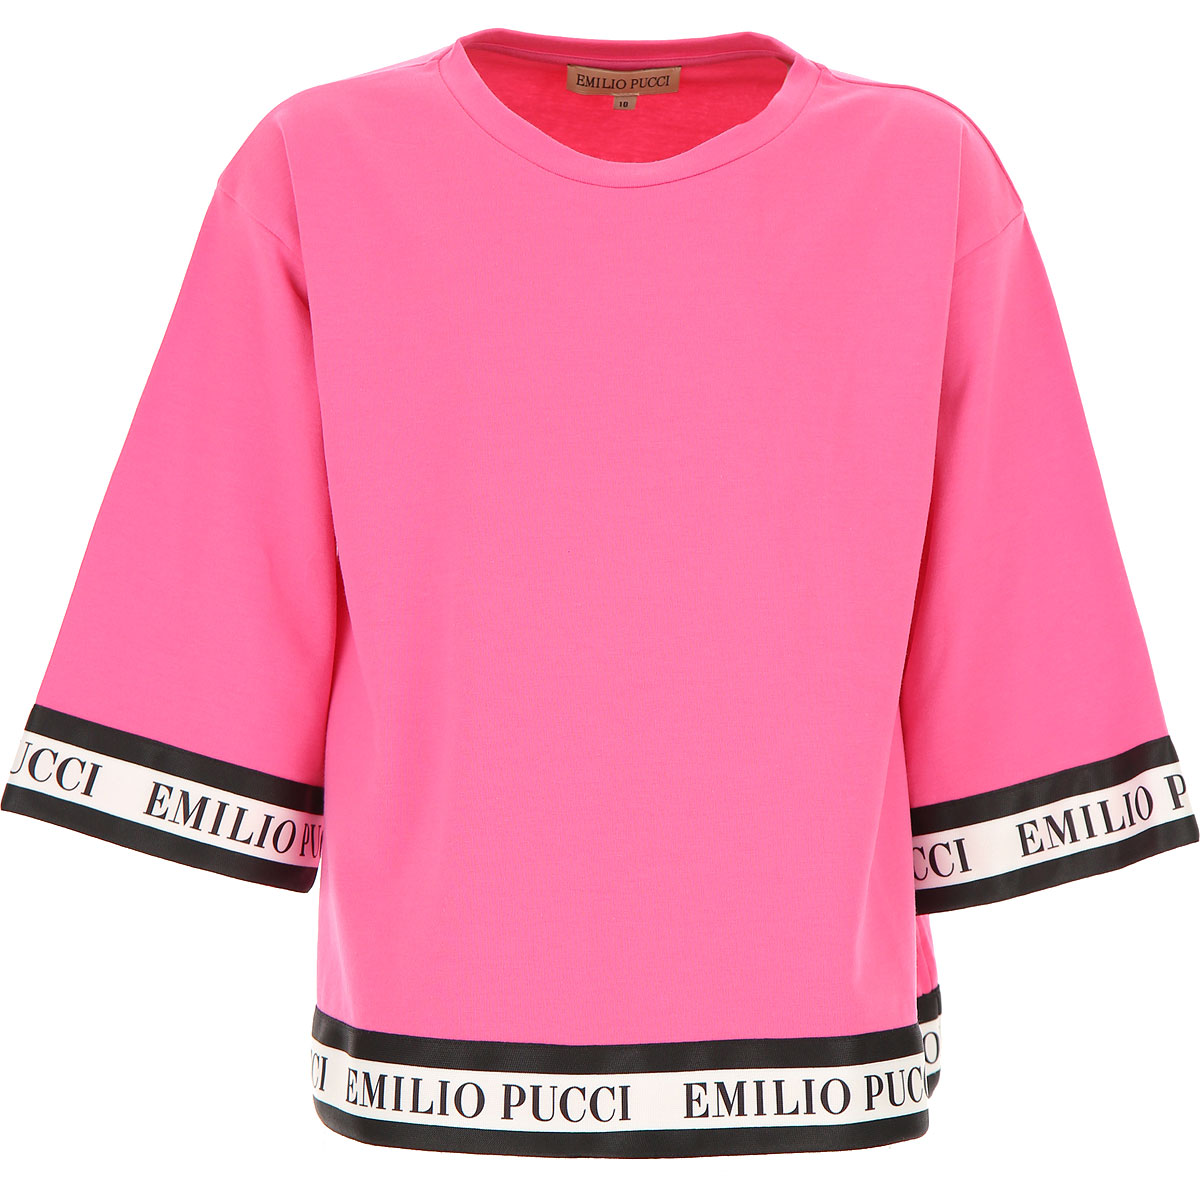 Emilio Pucci Kinder T-Shirt für Mädchen Günstig im Sale, Fuchsienfarbig, Fuchsie, Baumwolle, 2017, 10Y 12Y 6Y 8Y